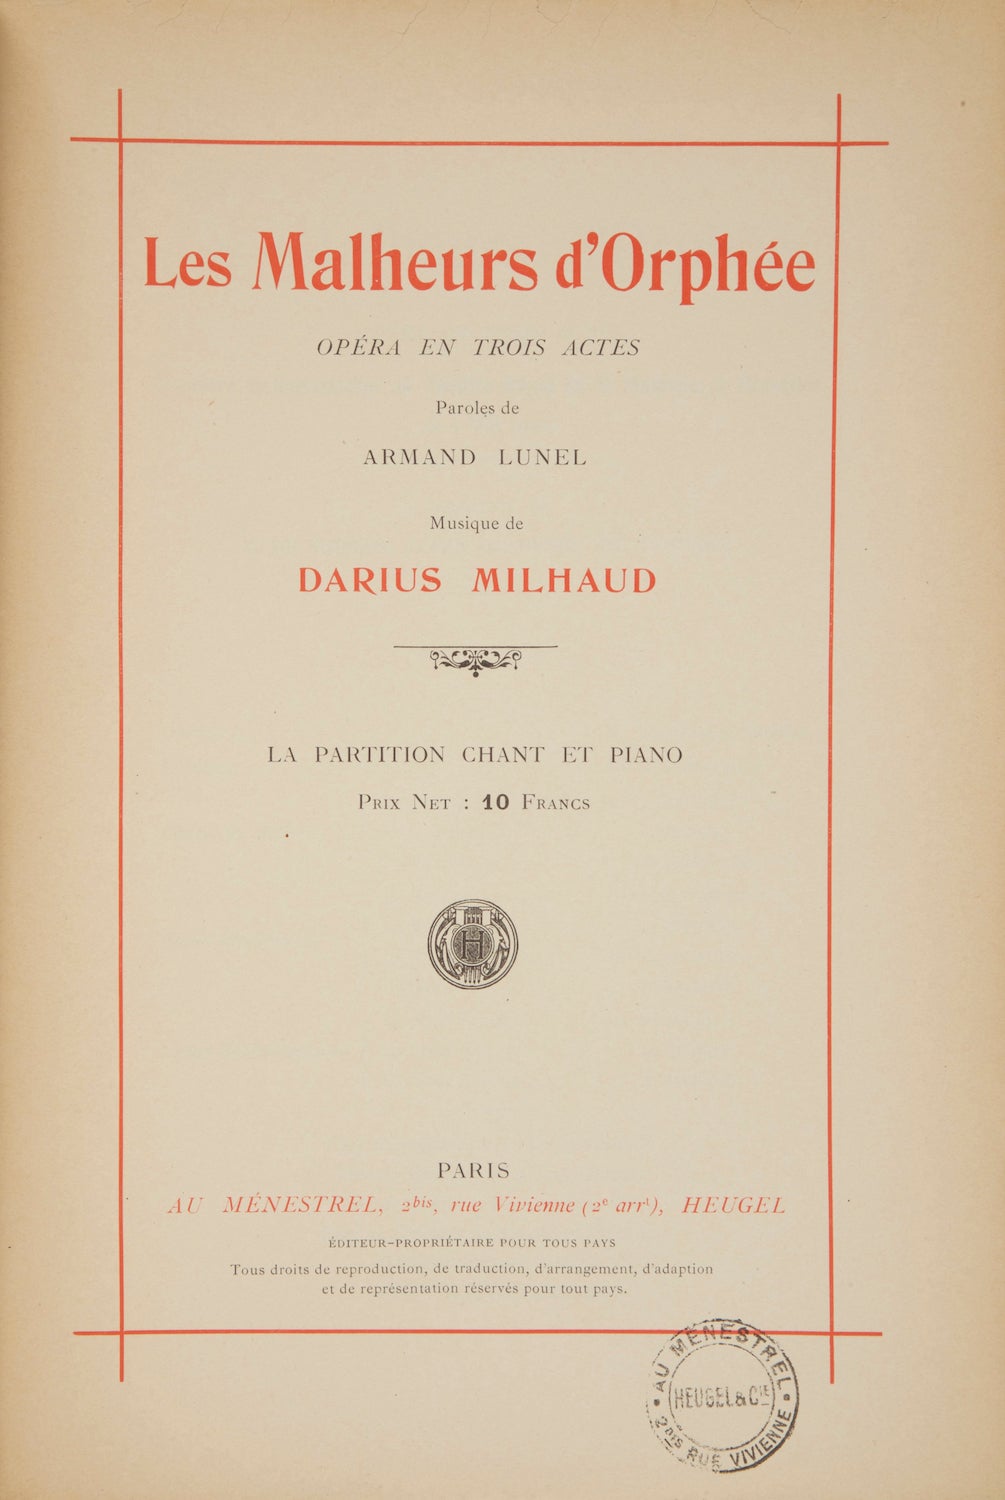 Op. 85 . Les Malheurs d'Orphée Opéra en Trois Actes Paroles de Armand Lunel  ... La Partition Chant et Piano Prix Net: 10 Francs. Piano-vocal score by  ...